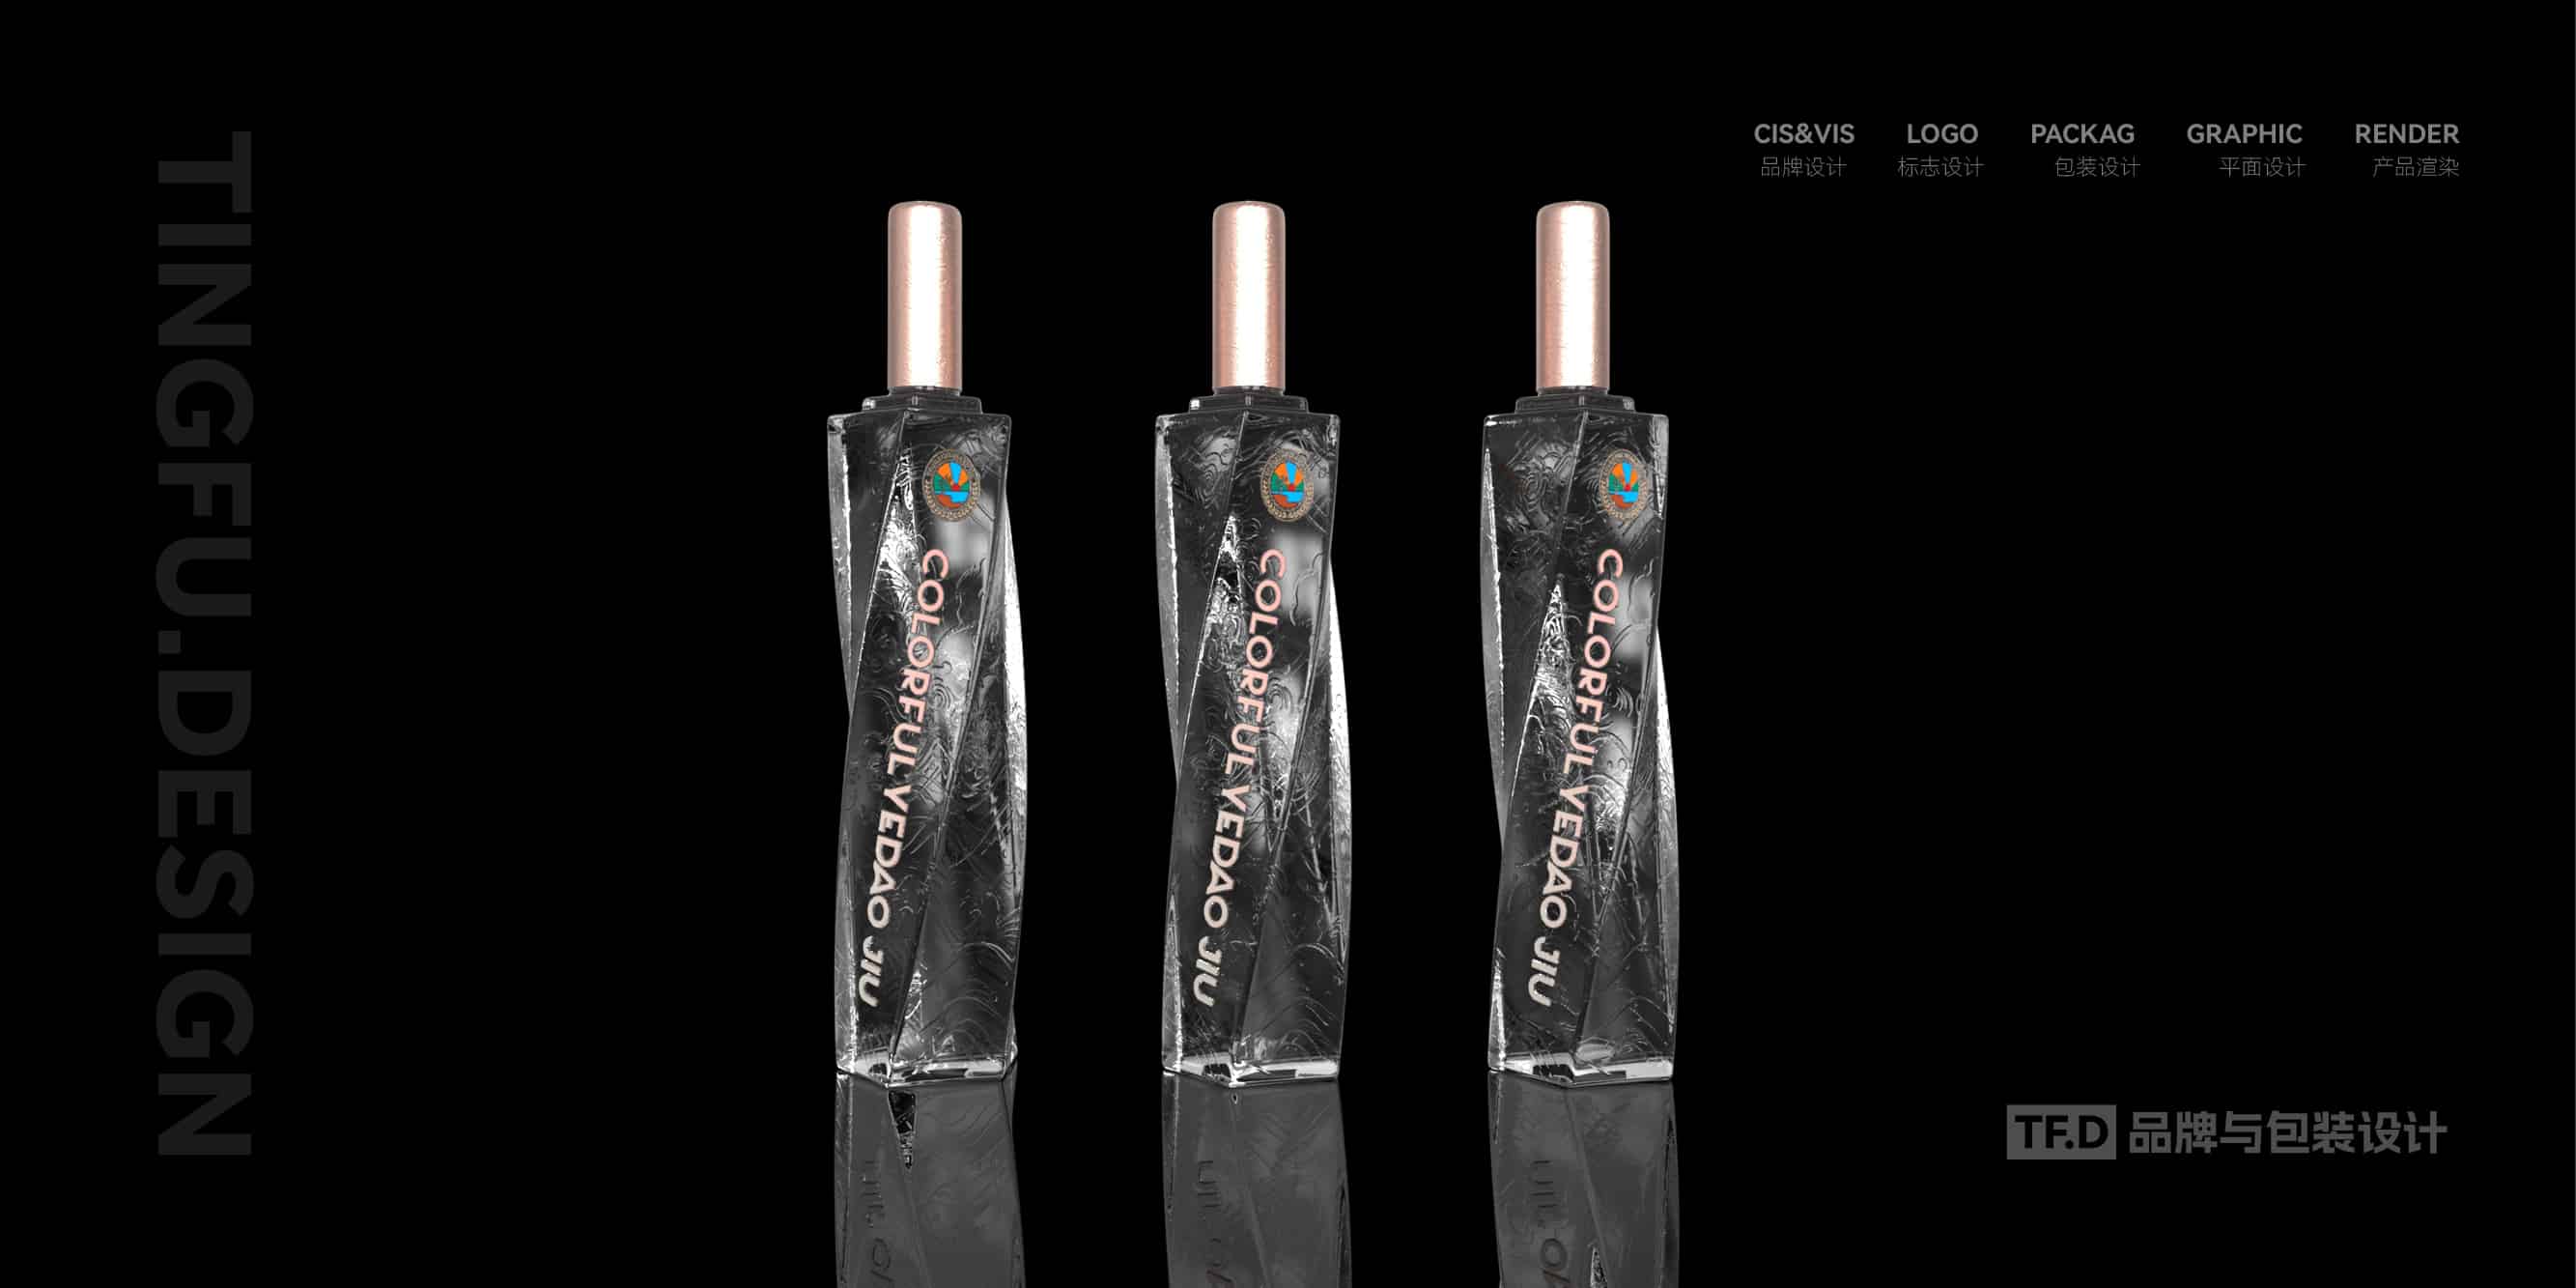 TFD品牌与包装设计-部分酒包装设计案例56-tuya.jpg